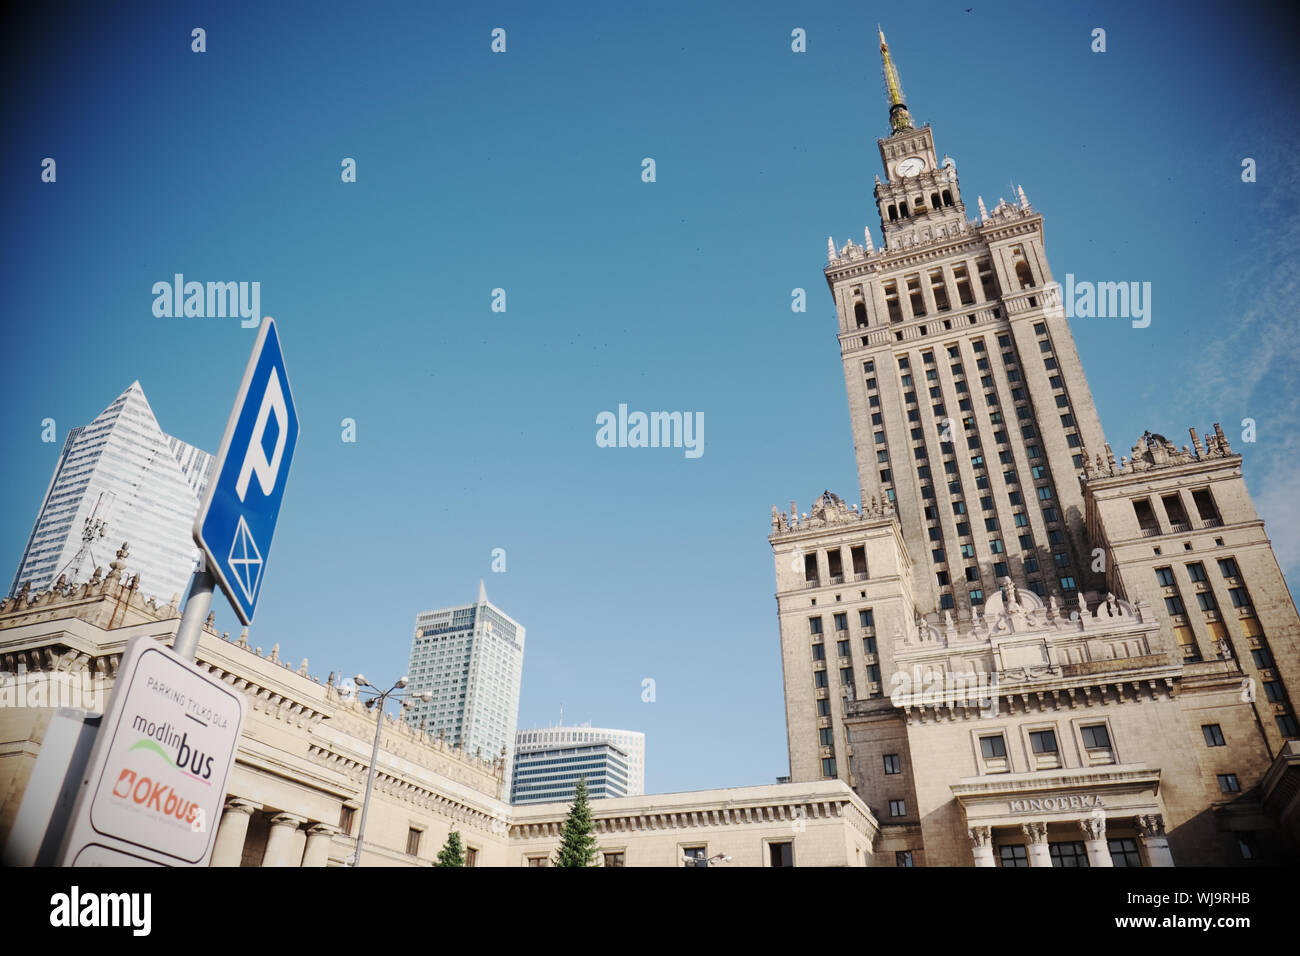 Varsavia Polonia il celeberrimo Palazzo della Cultura landmark un dono dall'Unione Sovietica in Polonia negli anni cinquanta Foto Stock